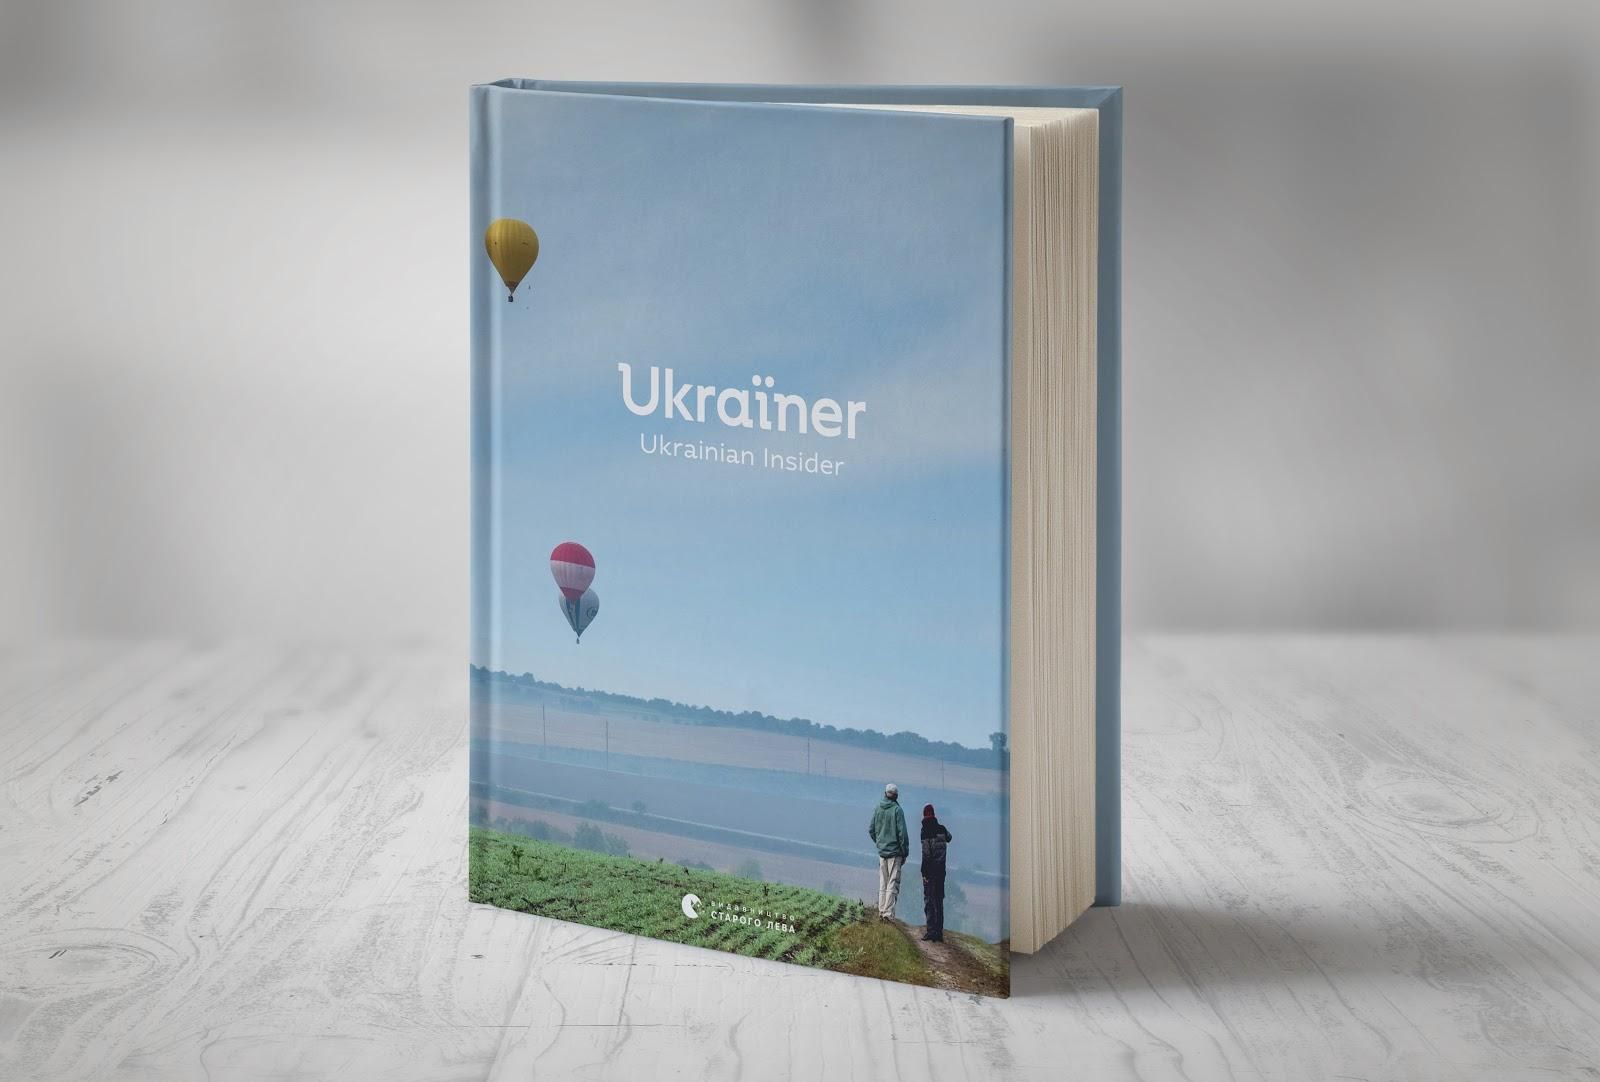 Ukraïner анонсував вихід книги про невідому Україну для іноземців